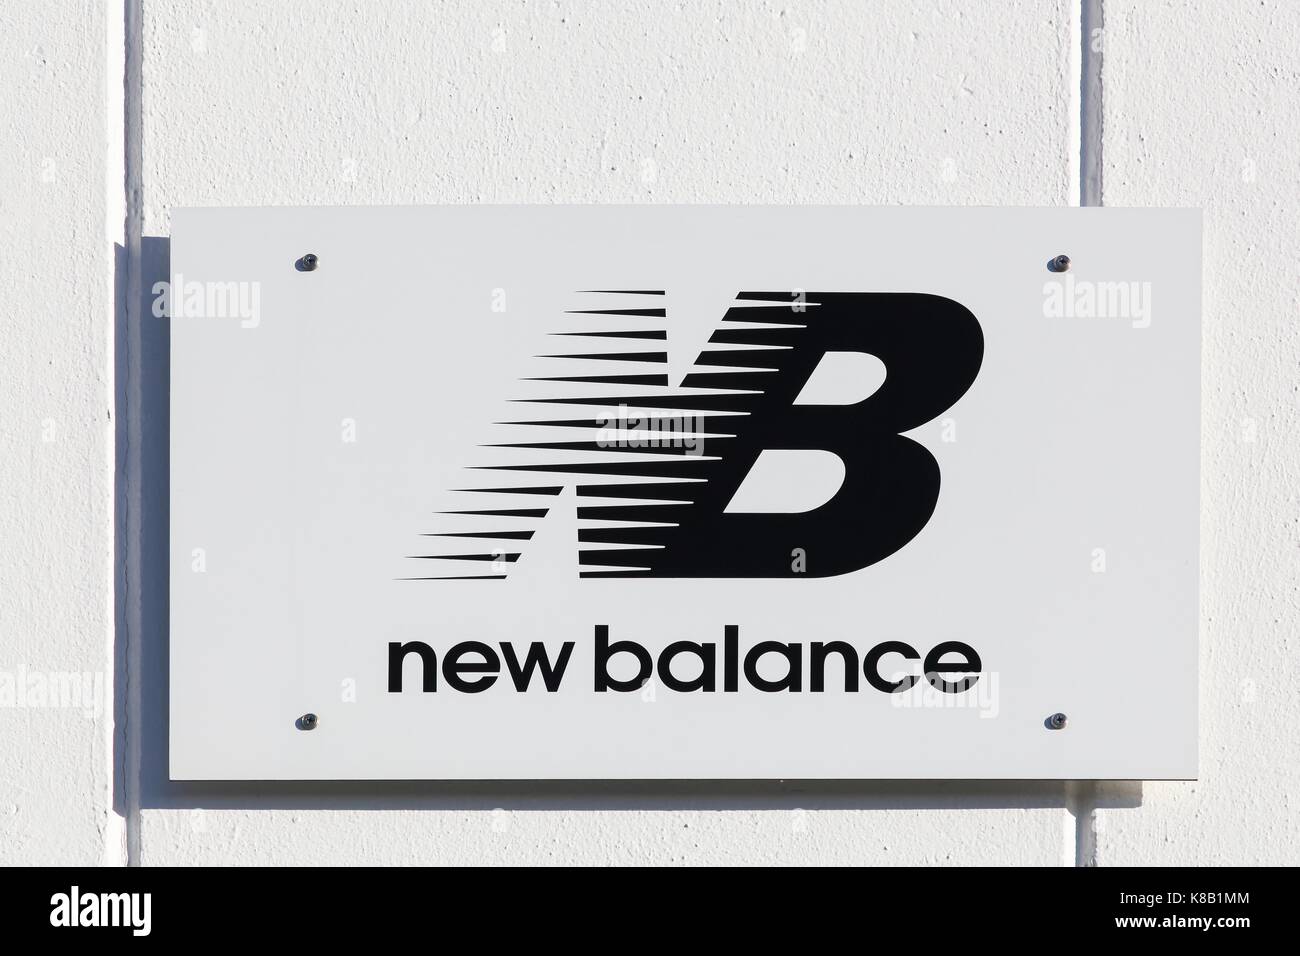 Logo new balance Banque de photographies et d'images à haute résolution -  Alamy